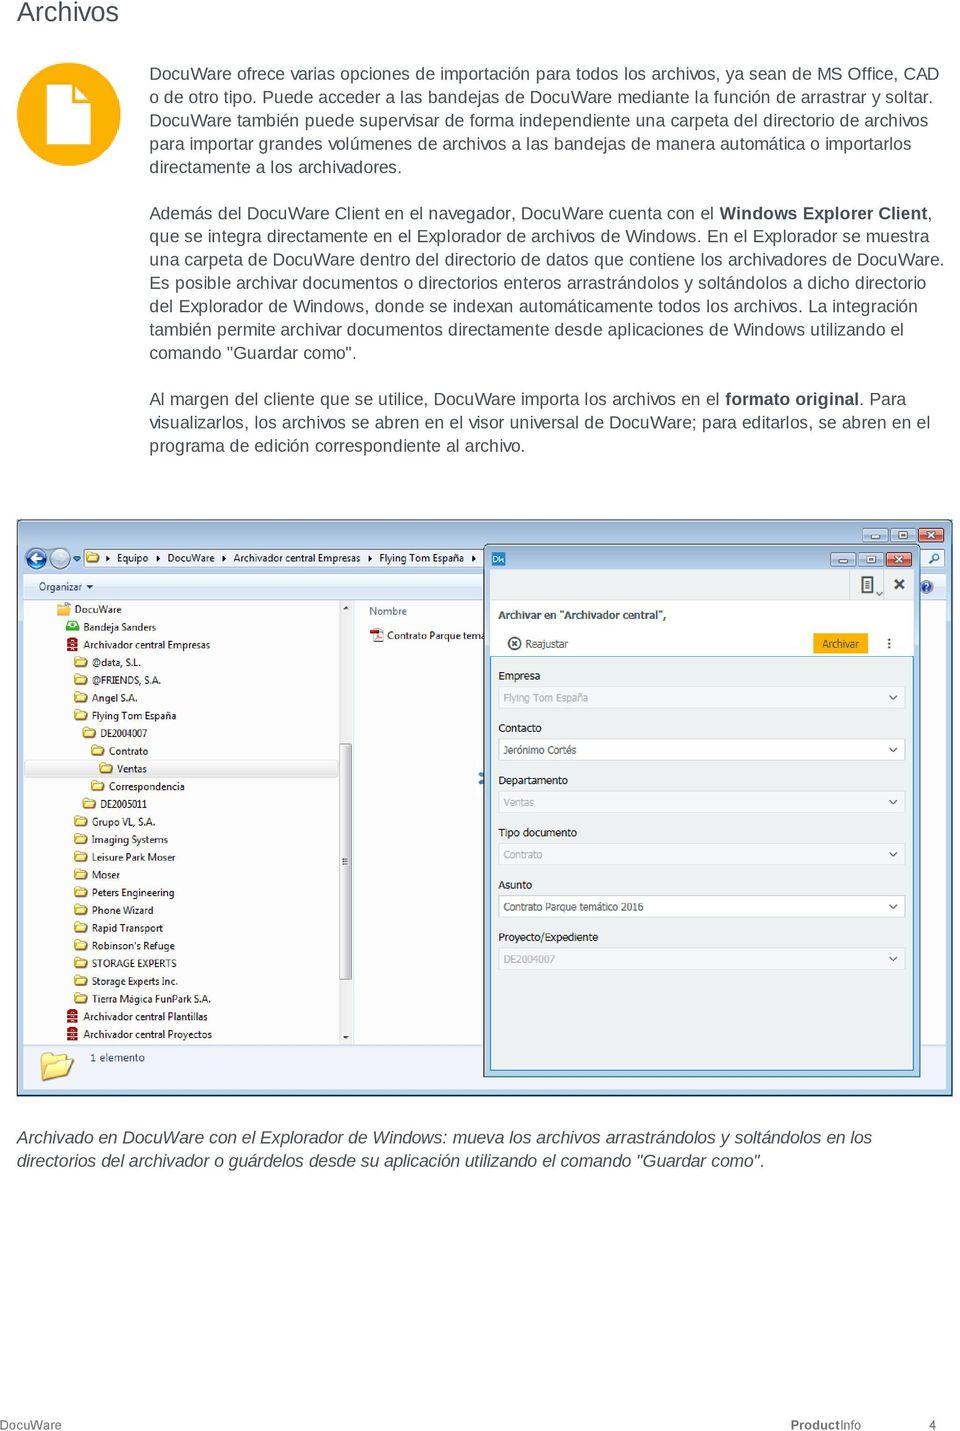 DocuWare también puede supervisar de forma independiente una carpeta del directorio de archivos para importar grandes volúmenes de archivos a las bandejas de manera automática o importarlos